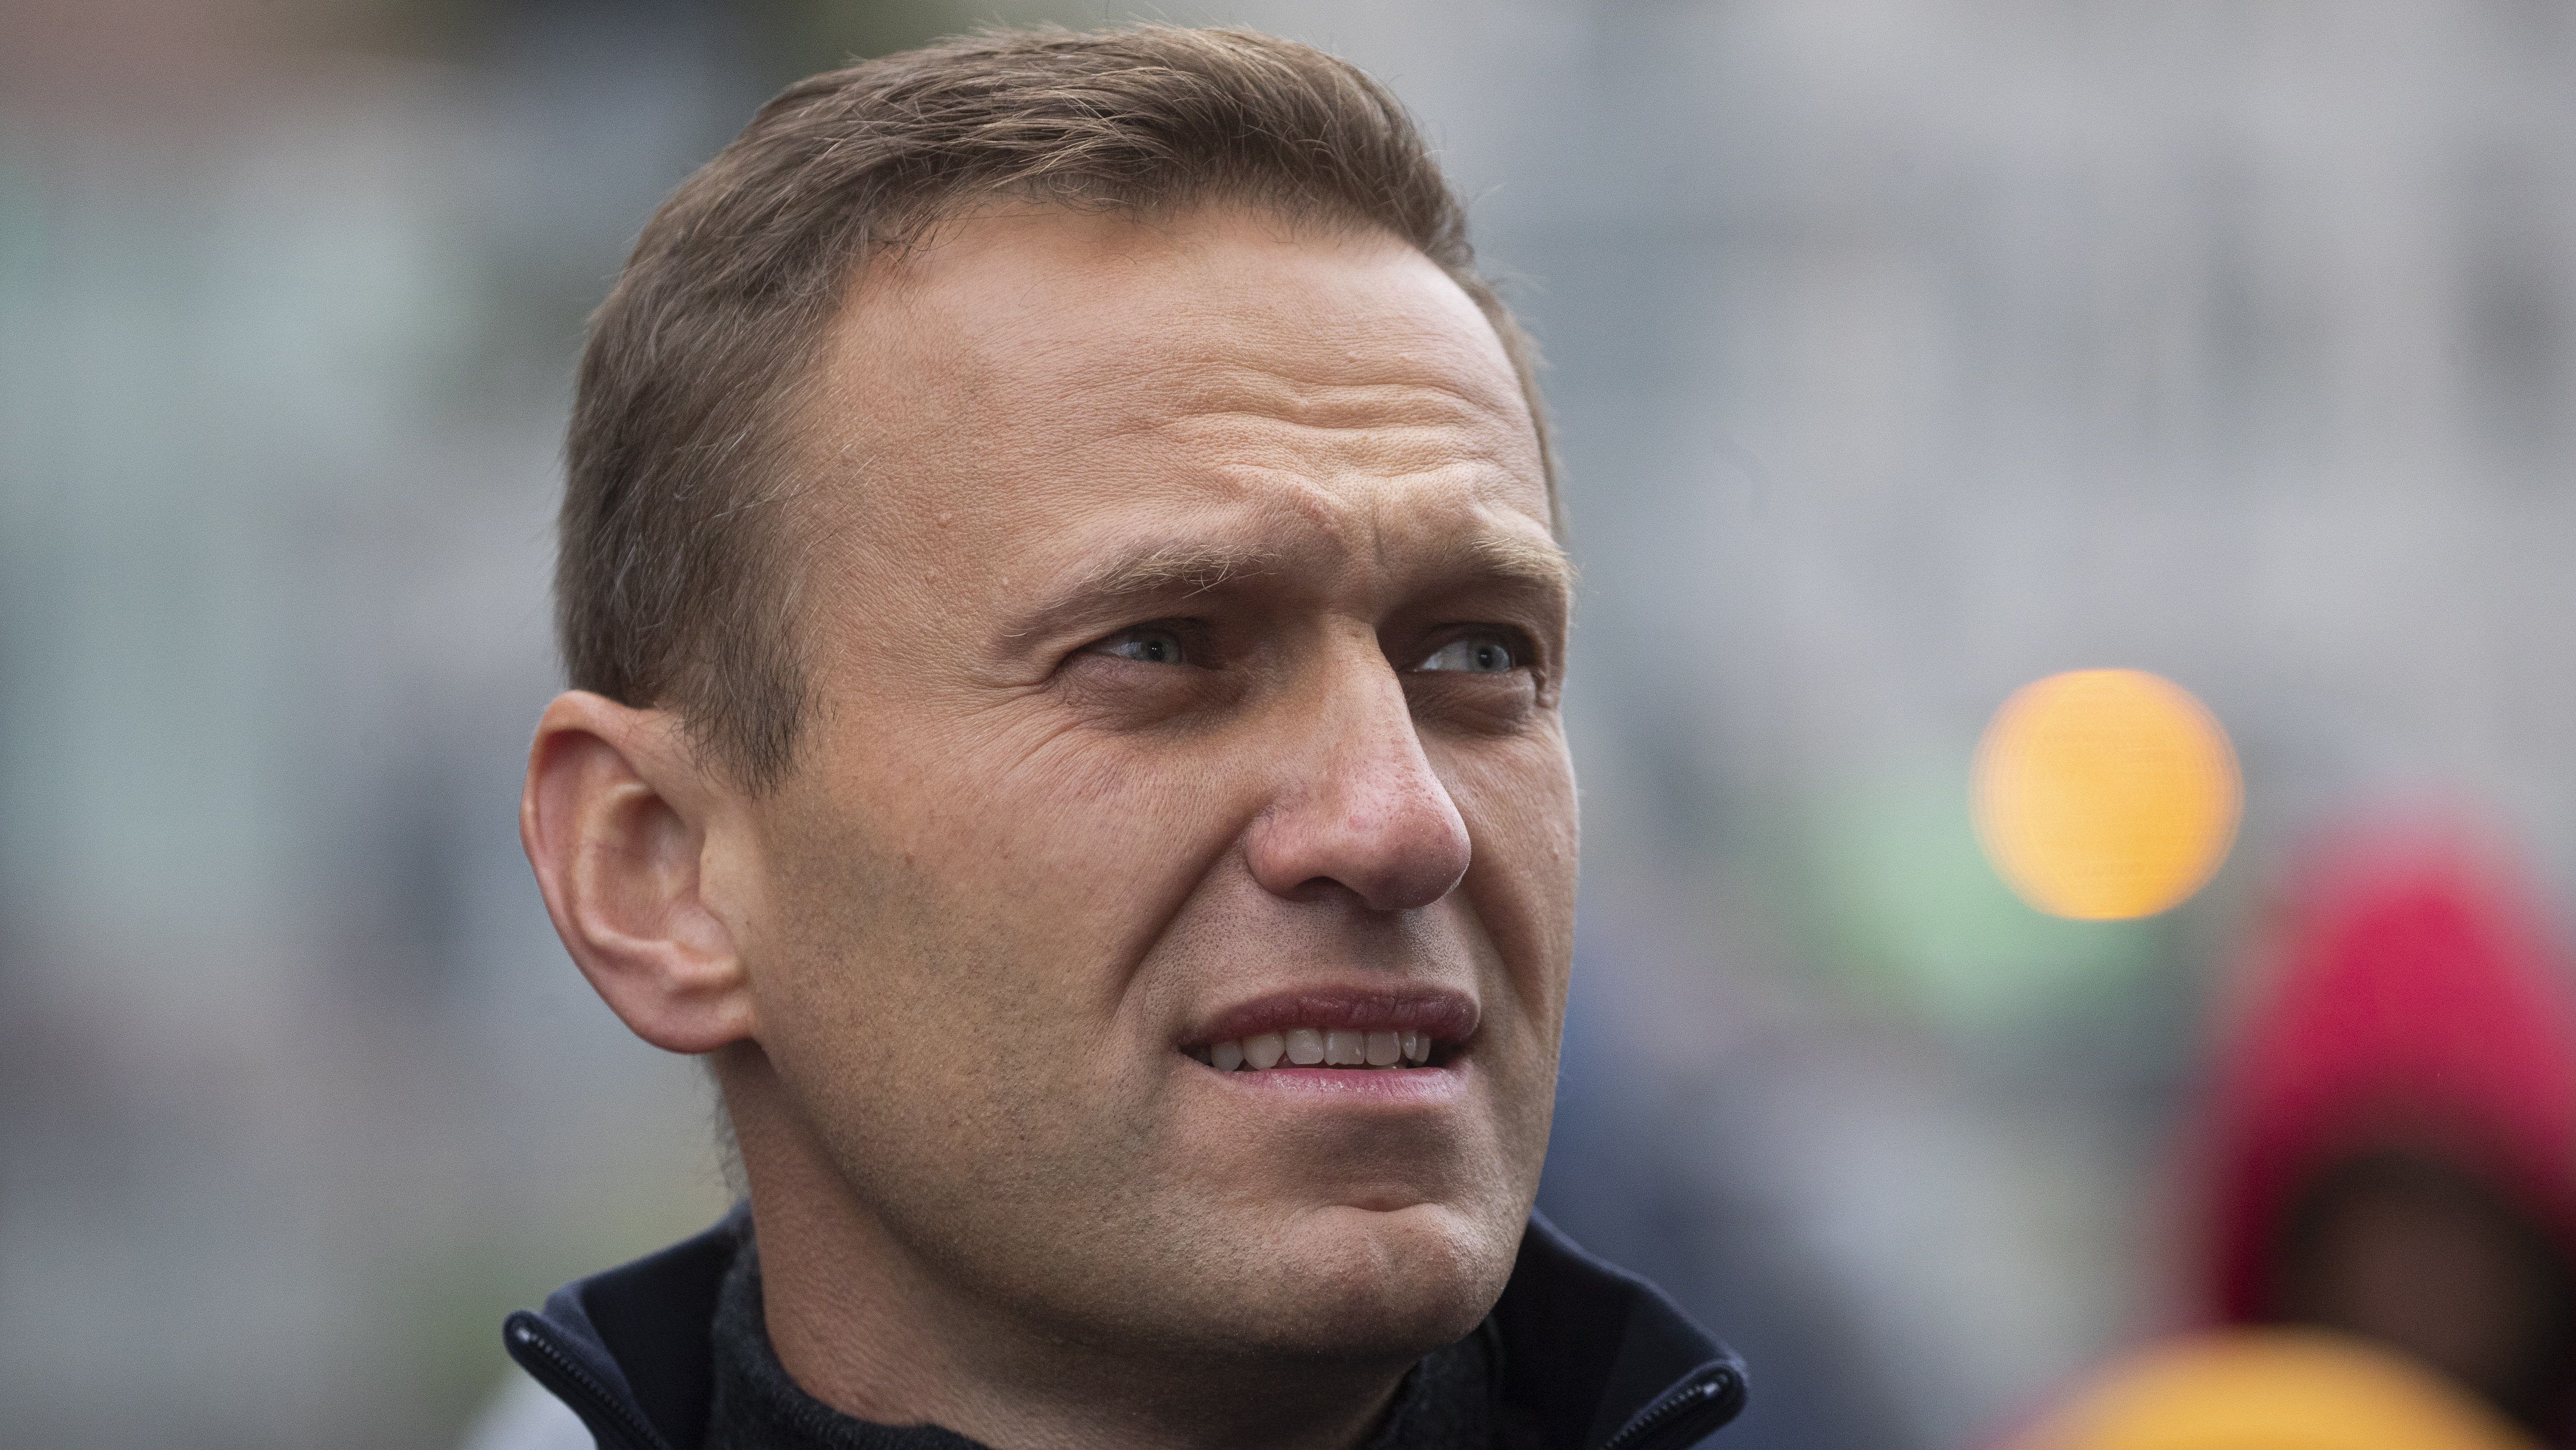 Rendőri védelemre szorul a kómában lévő Navalnij a német kormány szerint